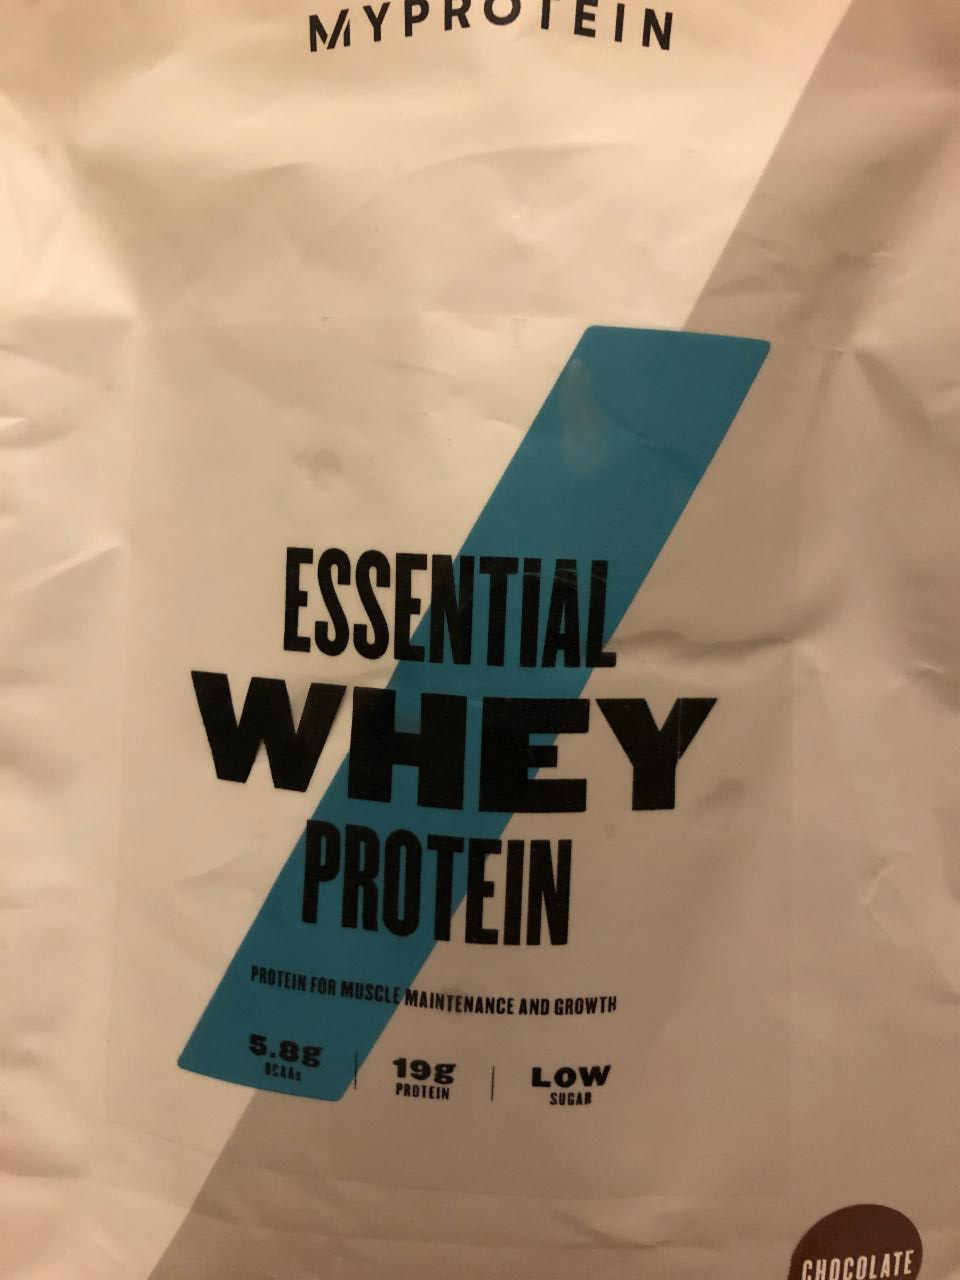 Fotografie - Essential whey protein Chocolate Myprotein